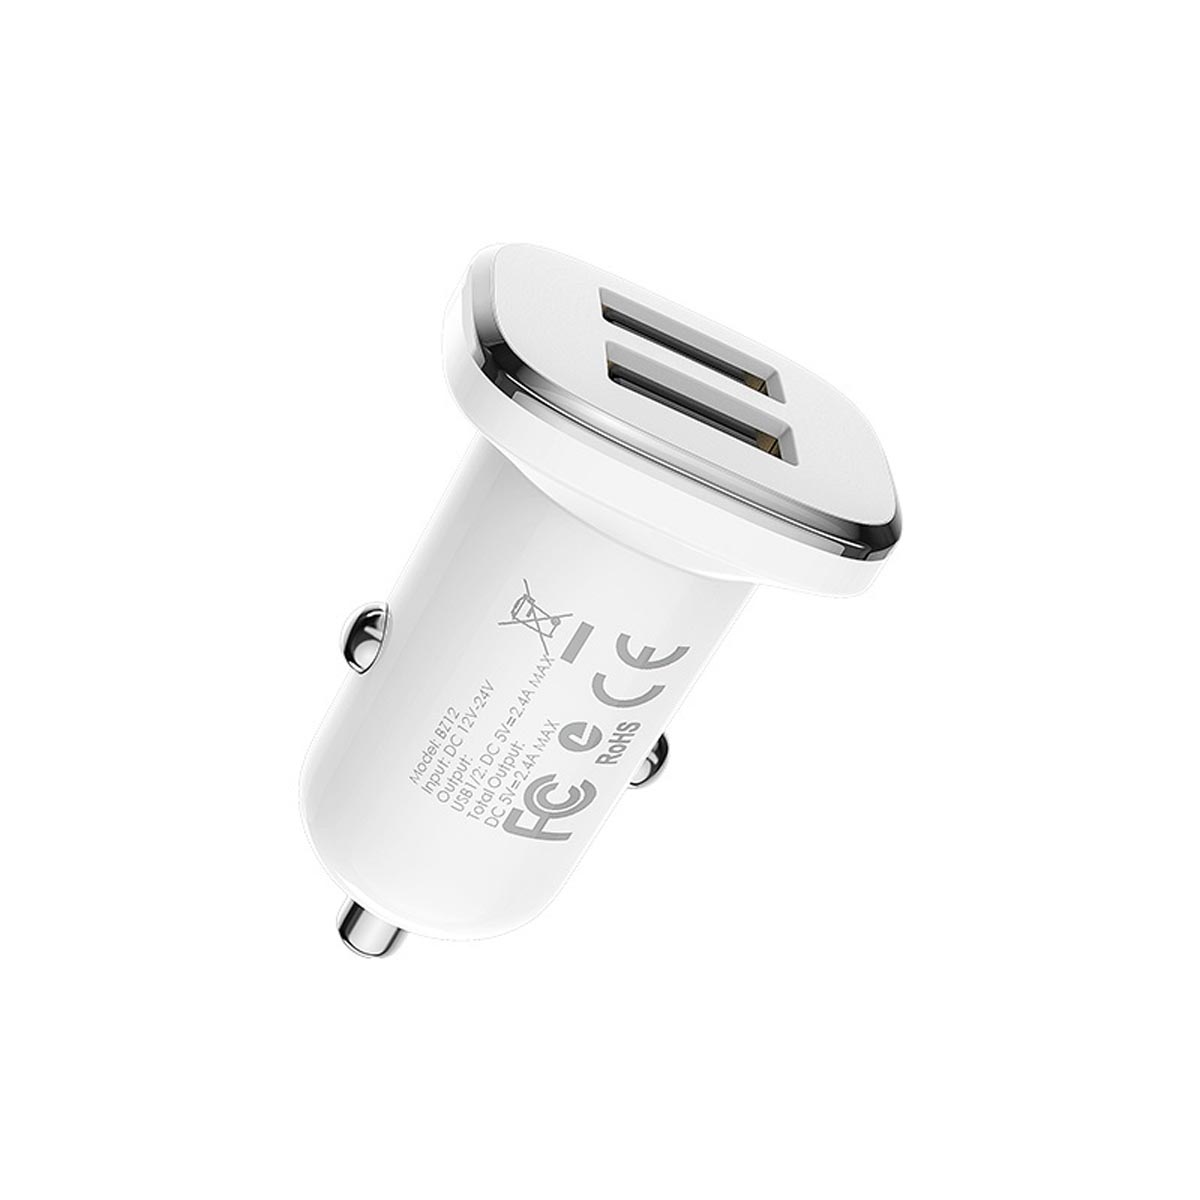 АЗУ (Автомобильное зарядное устройство) BOROFONE BZ12 Lasting power с кабелем Lightning 8 pin, 2.4А, 2 USB, цвет белый